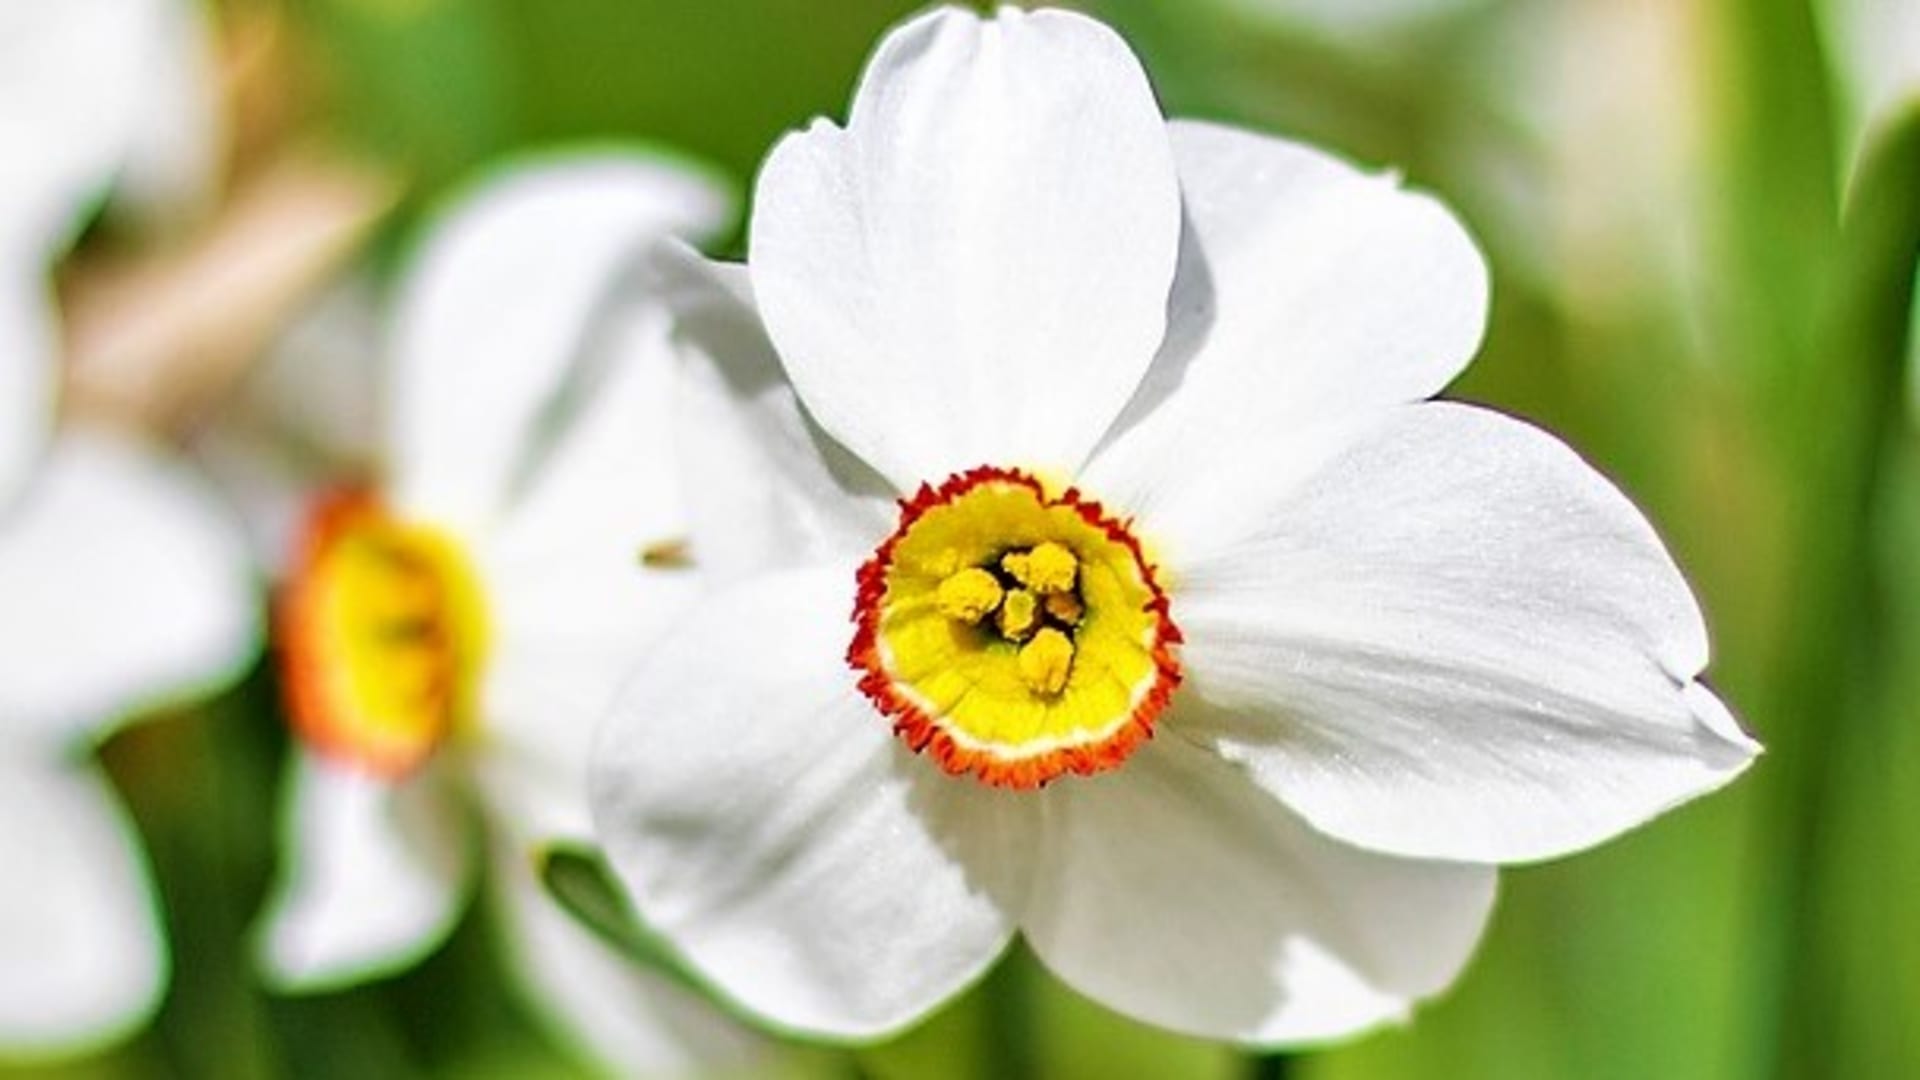 Nepřehlédnutelné květy narcisu poetického mají výrazný plochý žlutooranžový střed s většinou tmavě červeným zkadeřeným okrajem a zeleným okem v třpytivě bílých, dozadu zahnutých okvětních lístcích, které se na okrajích zakřivují.